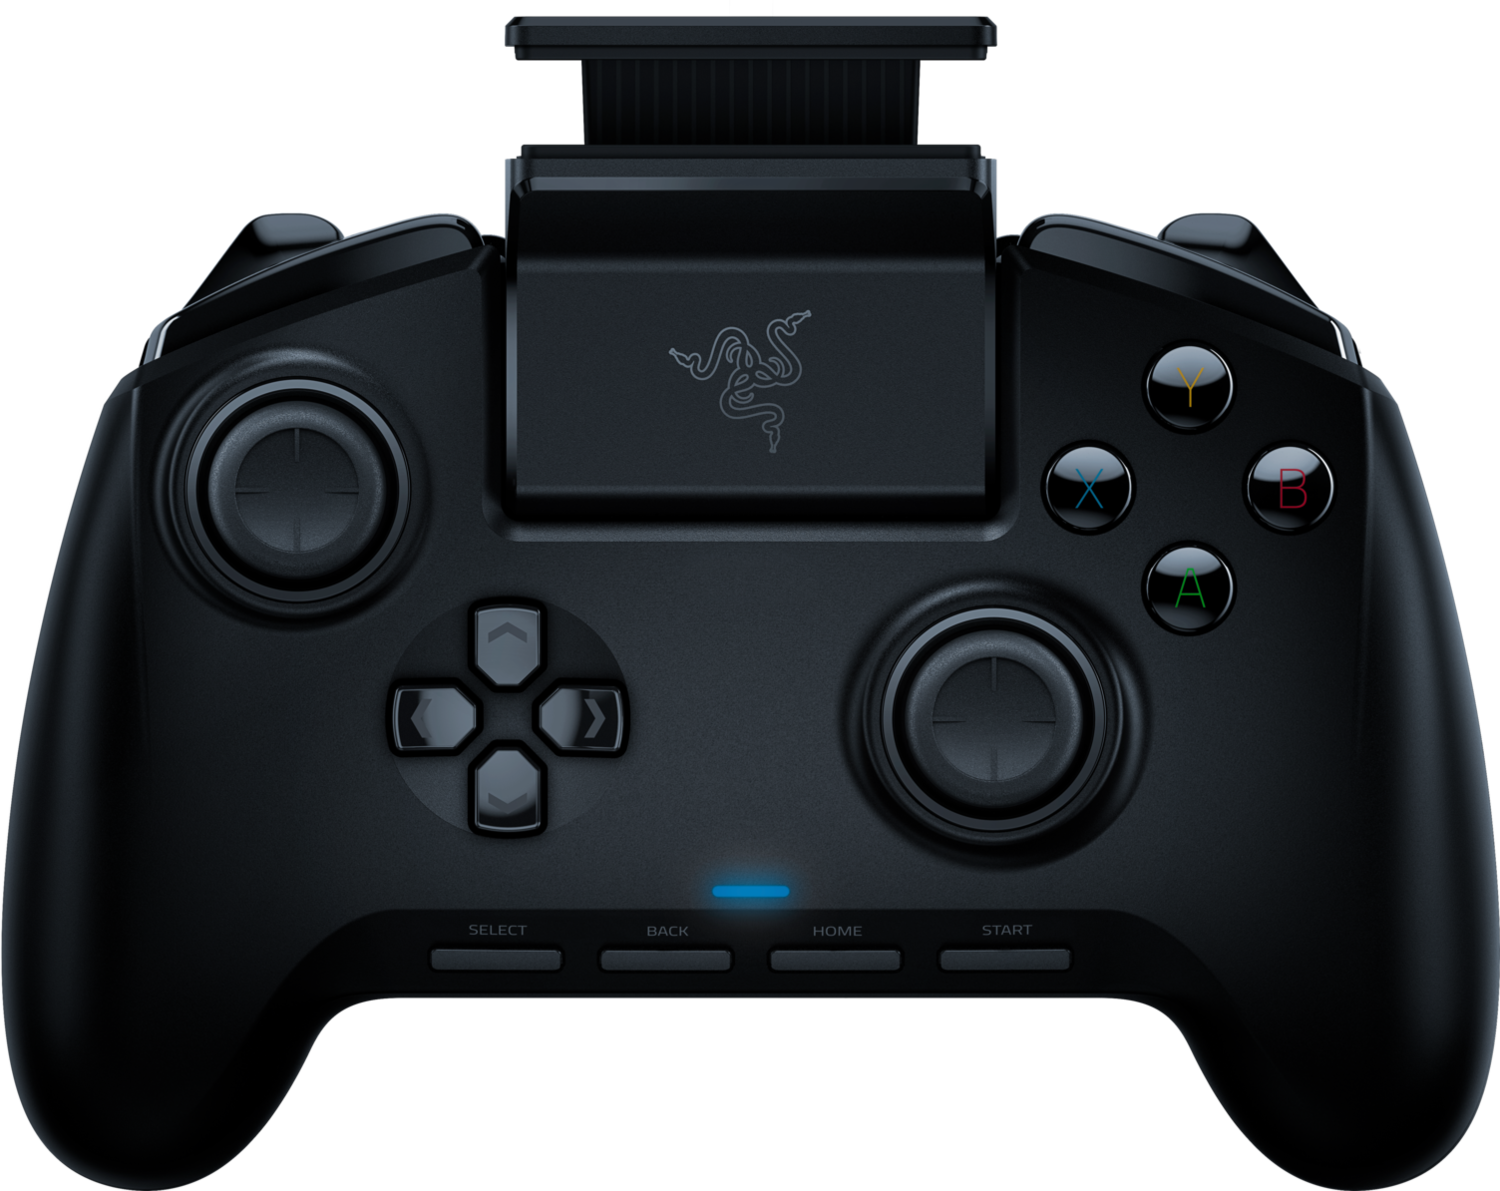 「Raiju Mobile控制器」讓玩家操控手遊更精準也更能享受完整視覺體驗。